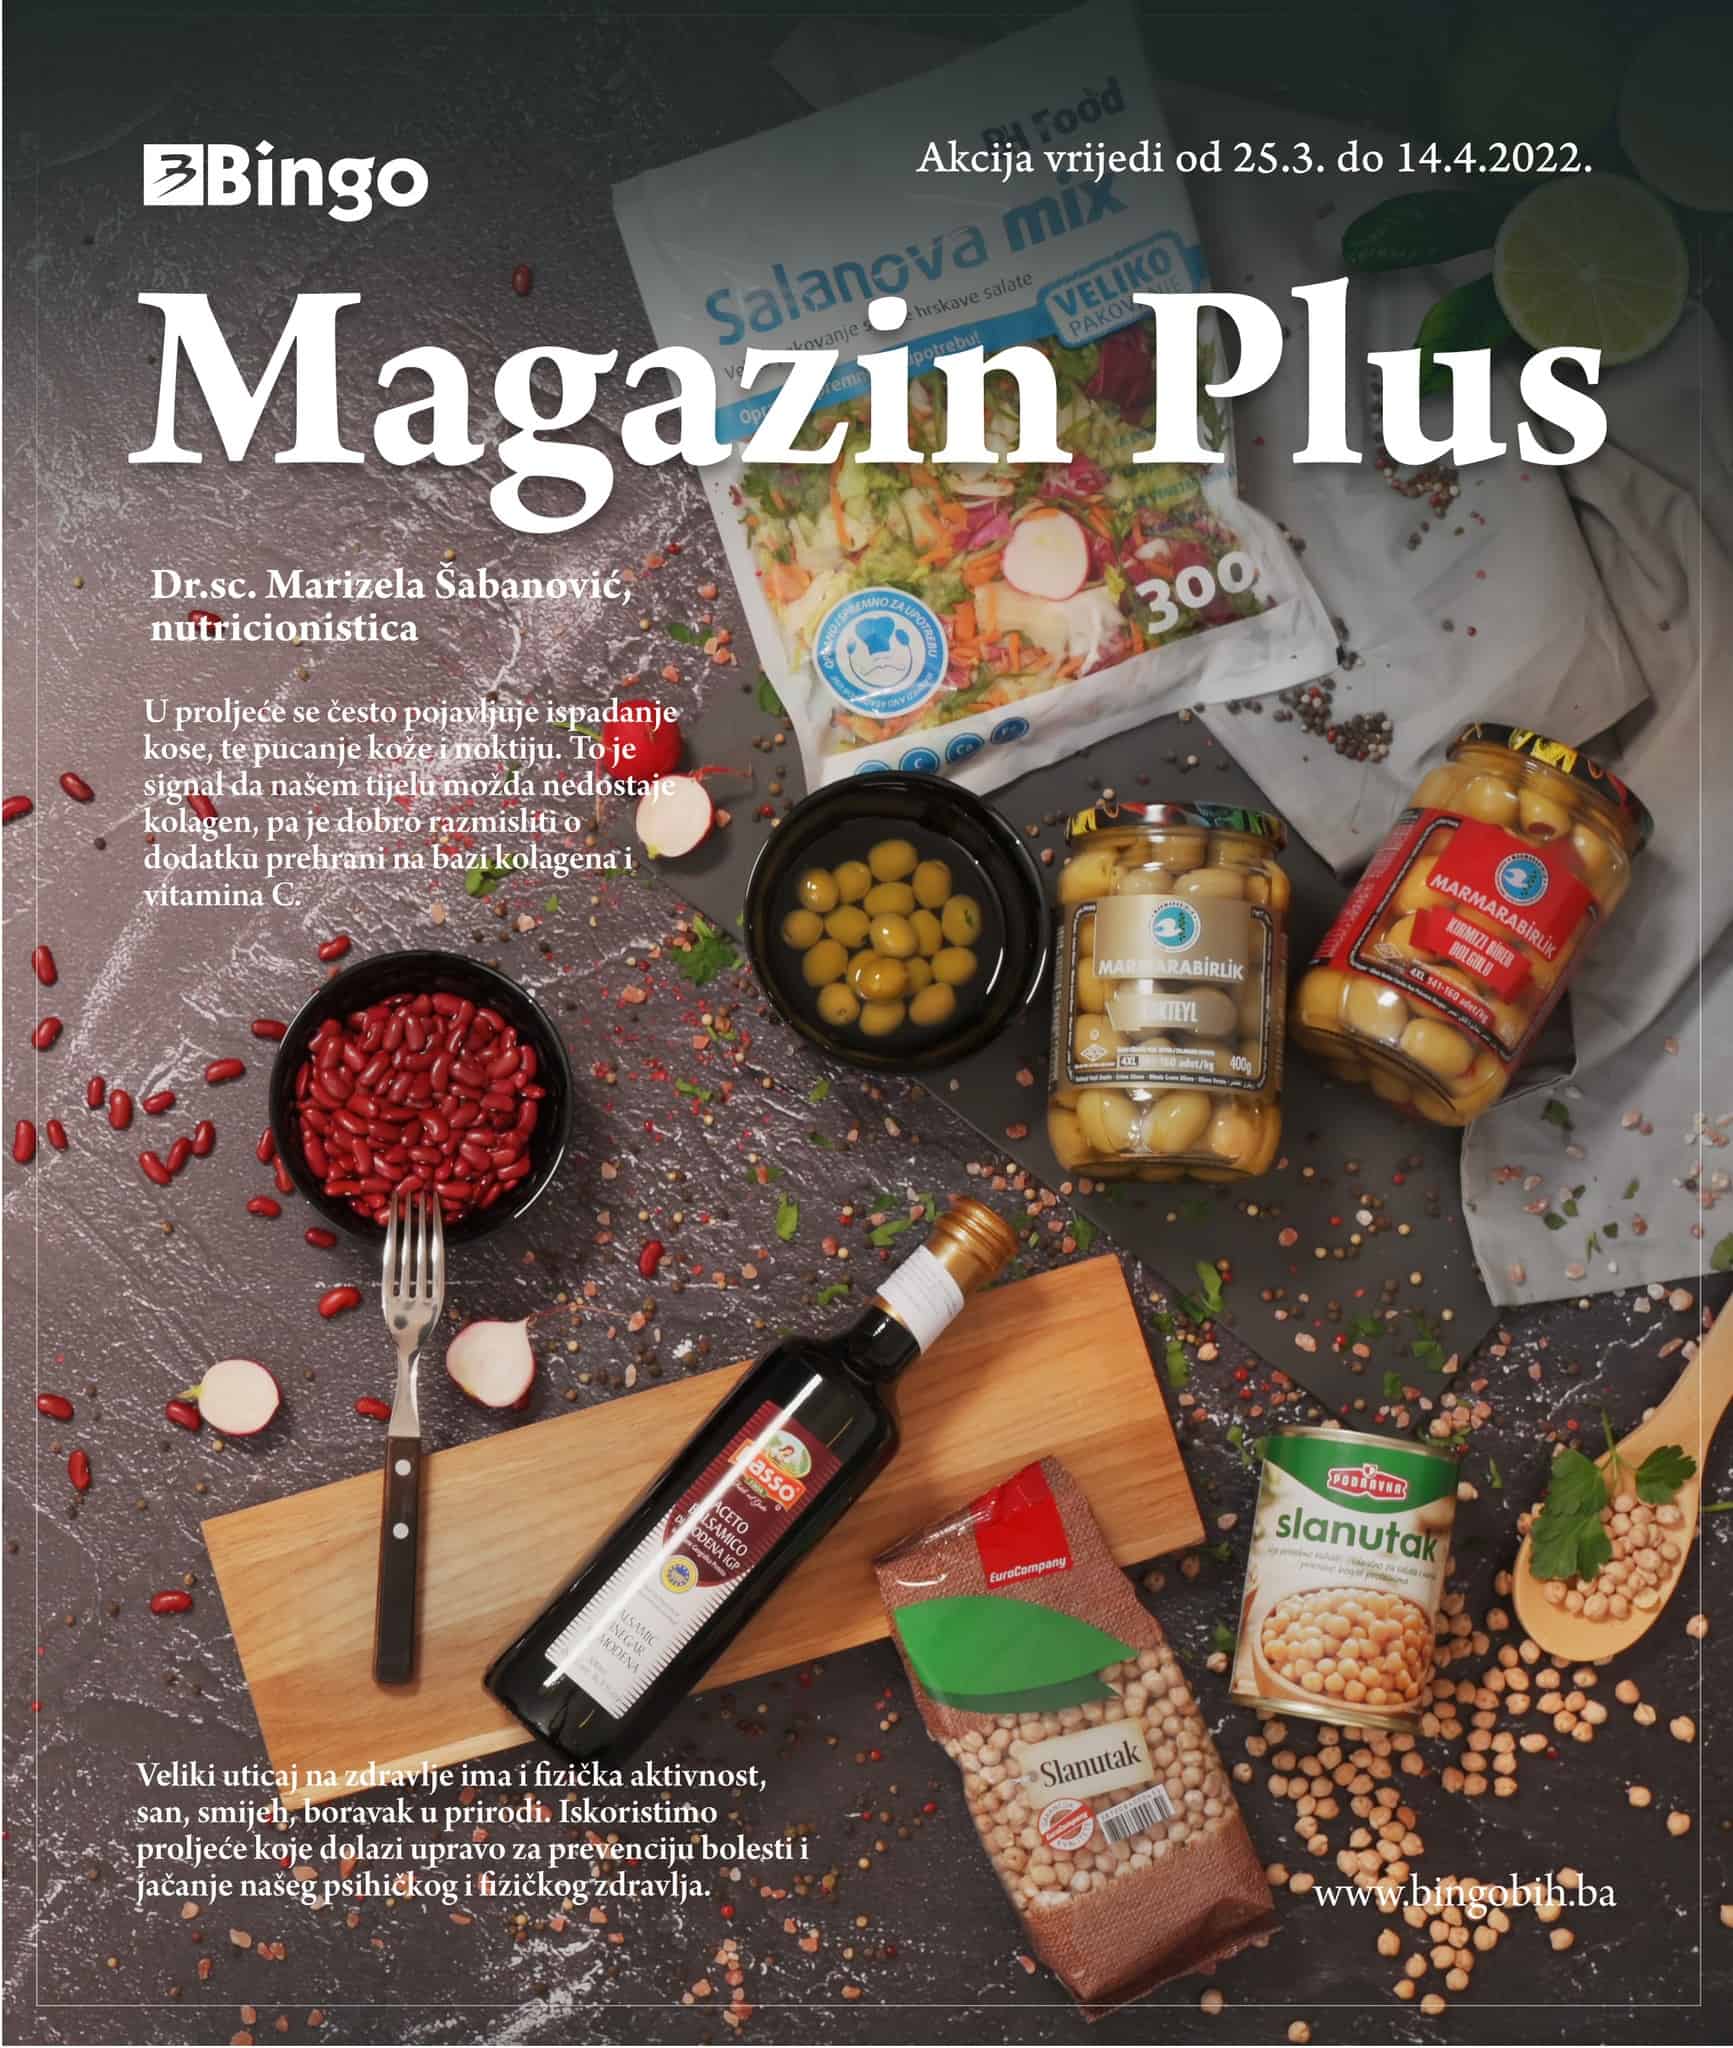 Bingo Magazin Plus donosi nam  odlične savjete o zdravoj ishrani i borbi protiv alergija. Pogledajte Bingo Katalog Magazin Plus i pronadjite omiljene proizvode po akcijskim cijenama! 